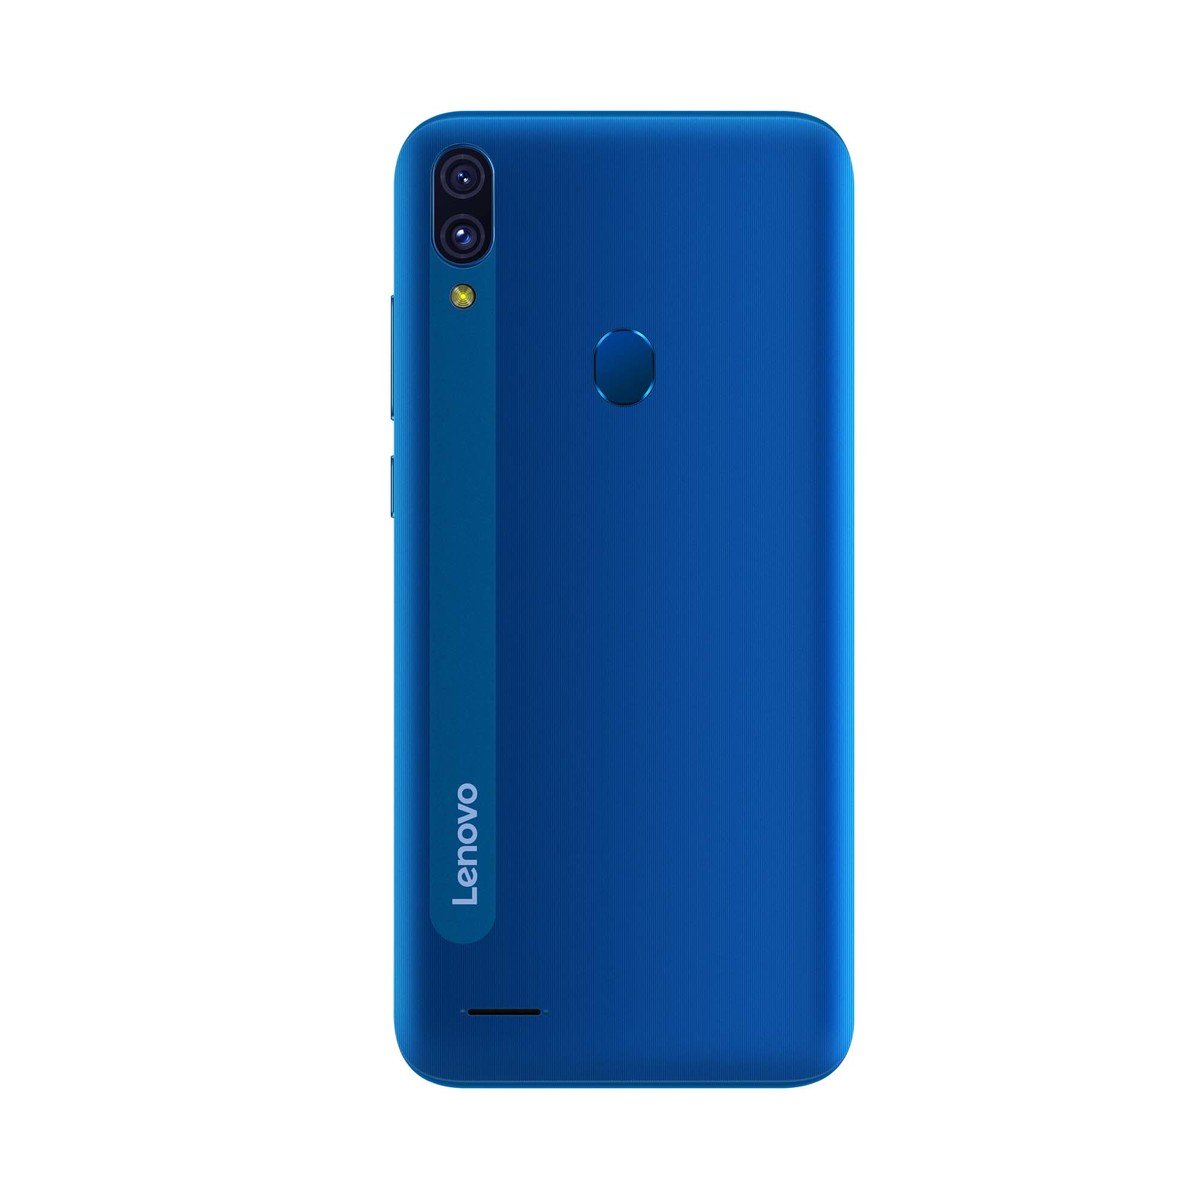 Lenovo A7 32GB Blue